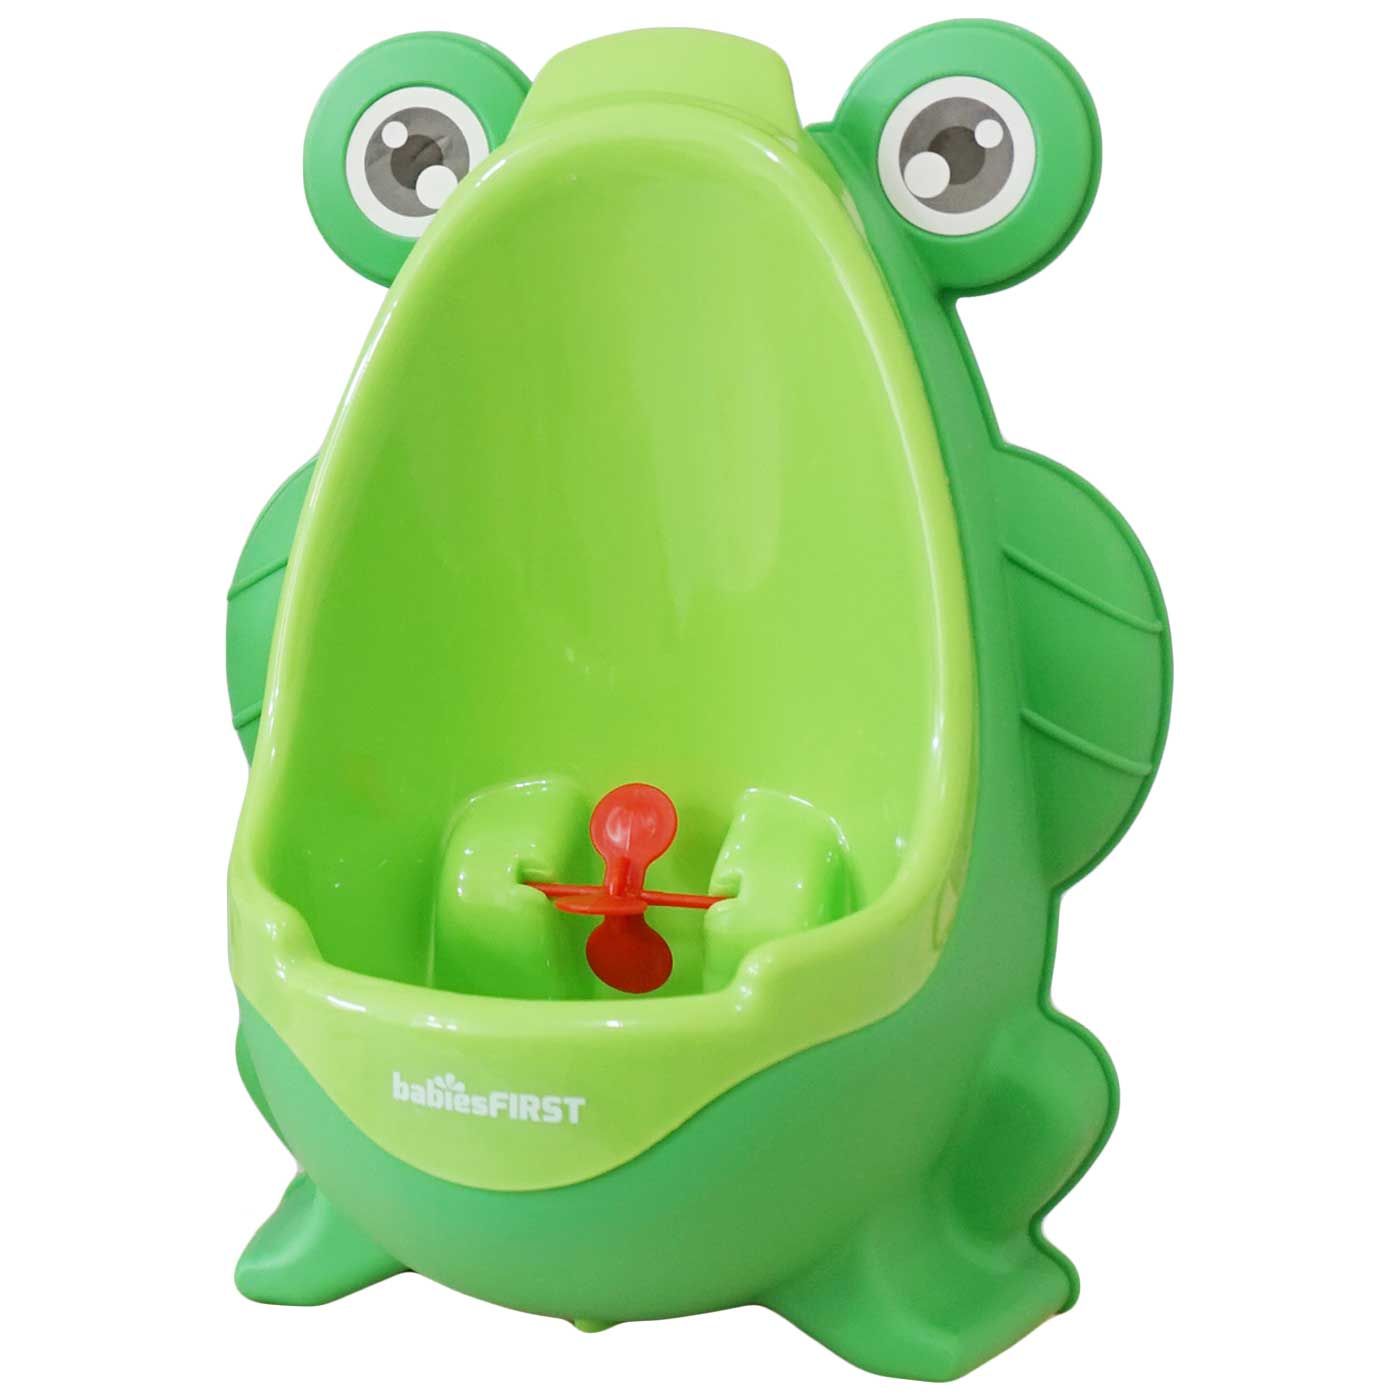 Babiesfirst Kids Training Urinal Green - 3